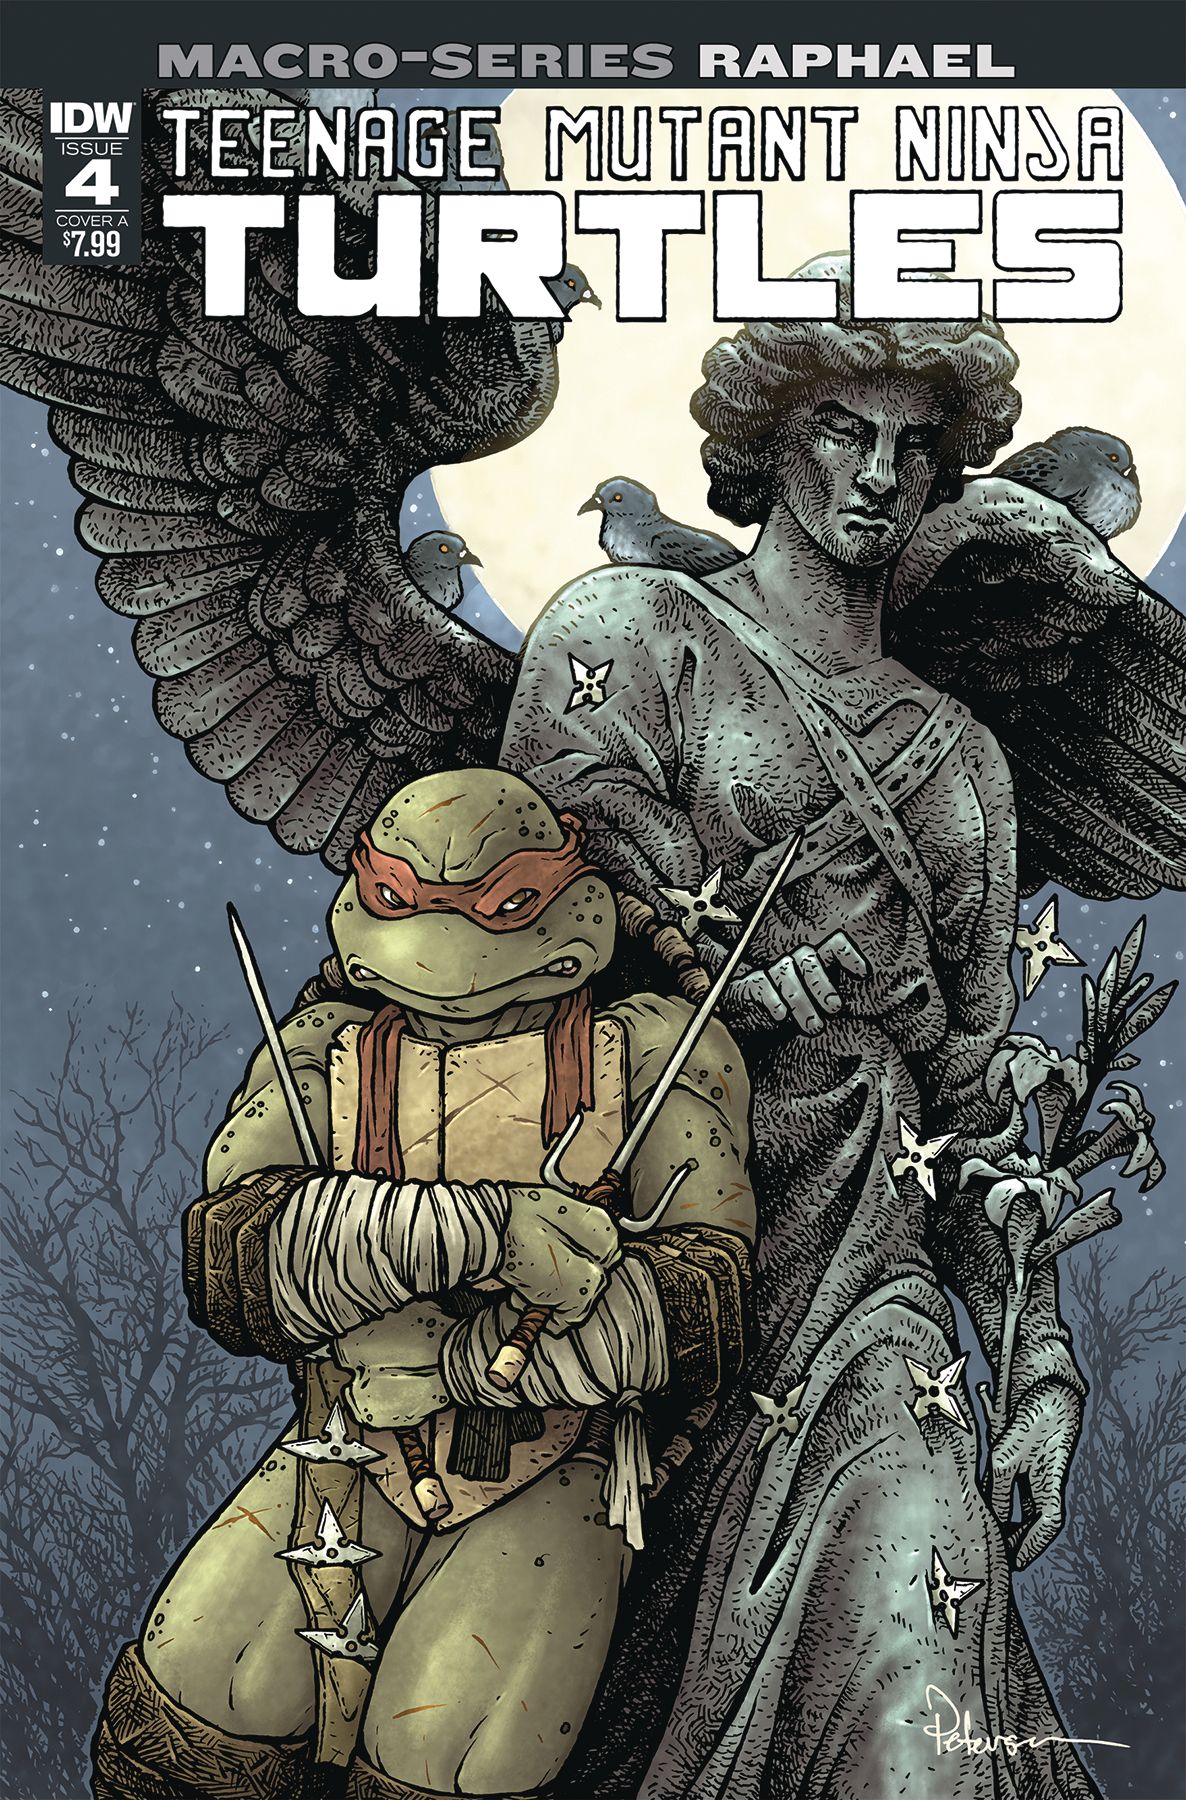 Teenage Mutant Ninja Turtles Macro-Series #4 (Raphael) Comic